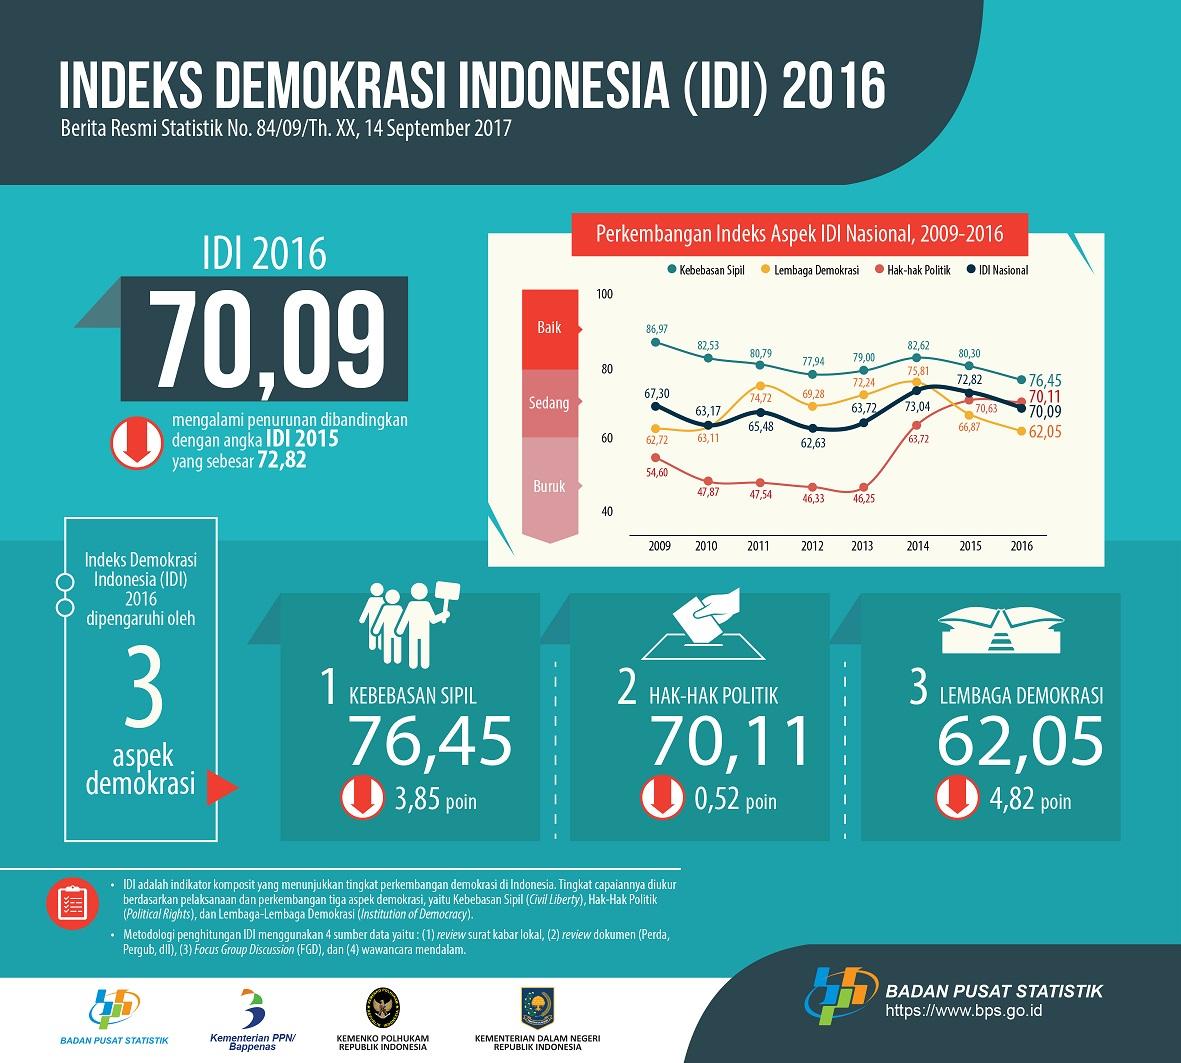 Indeks Demokrasi Indonesia (IDI) Tingkat Nasional 2016 Mengalami Penurunan Dibandingkan Dengan IDI Tingkat Nasional 2015